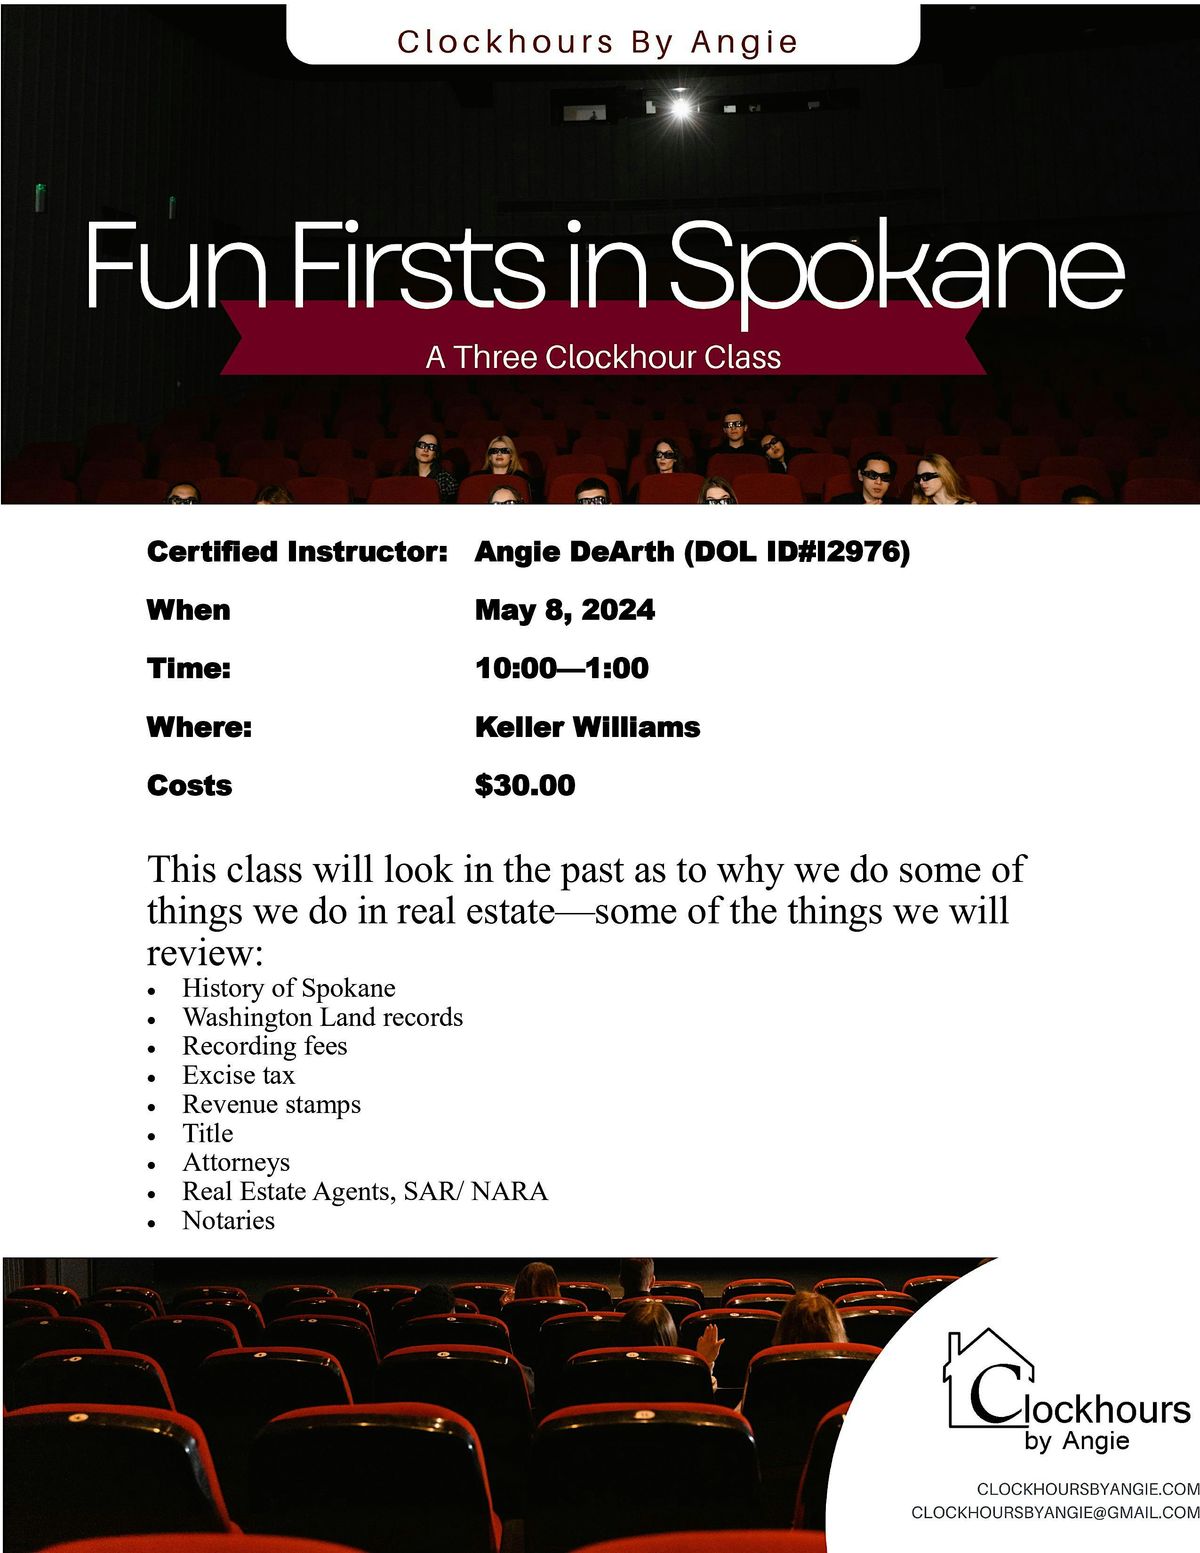 Fun Firsts in Spokane!